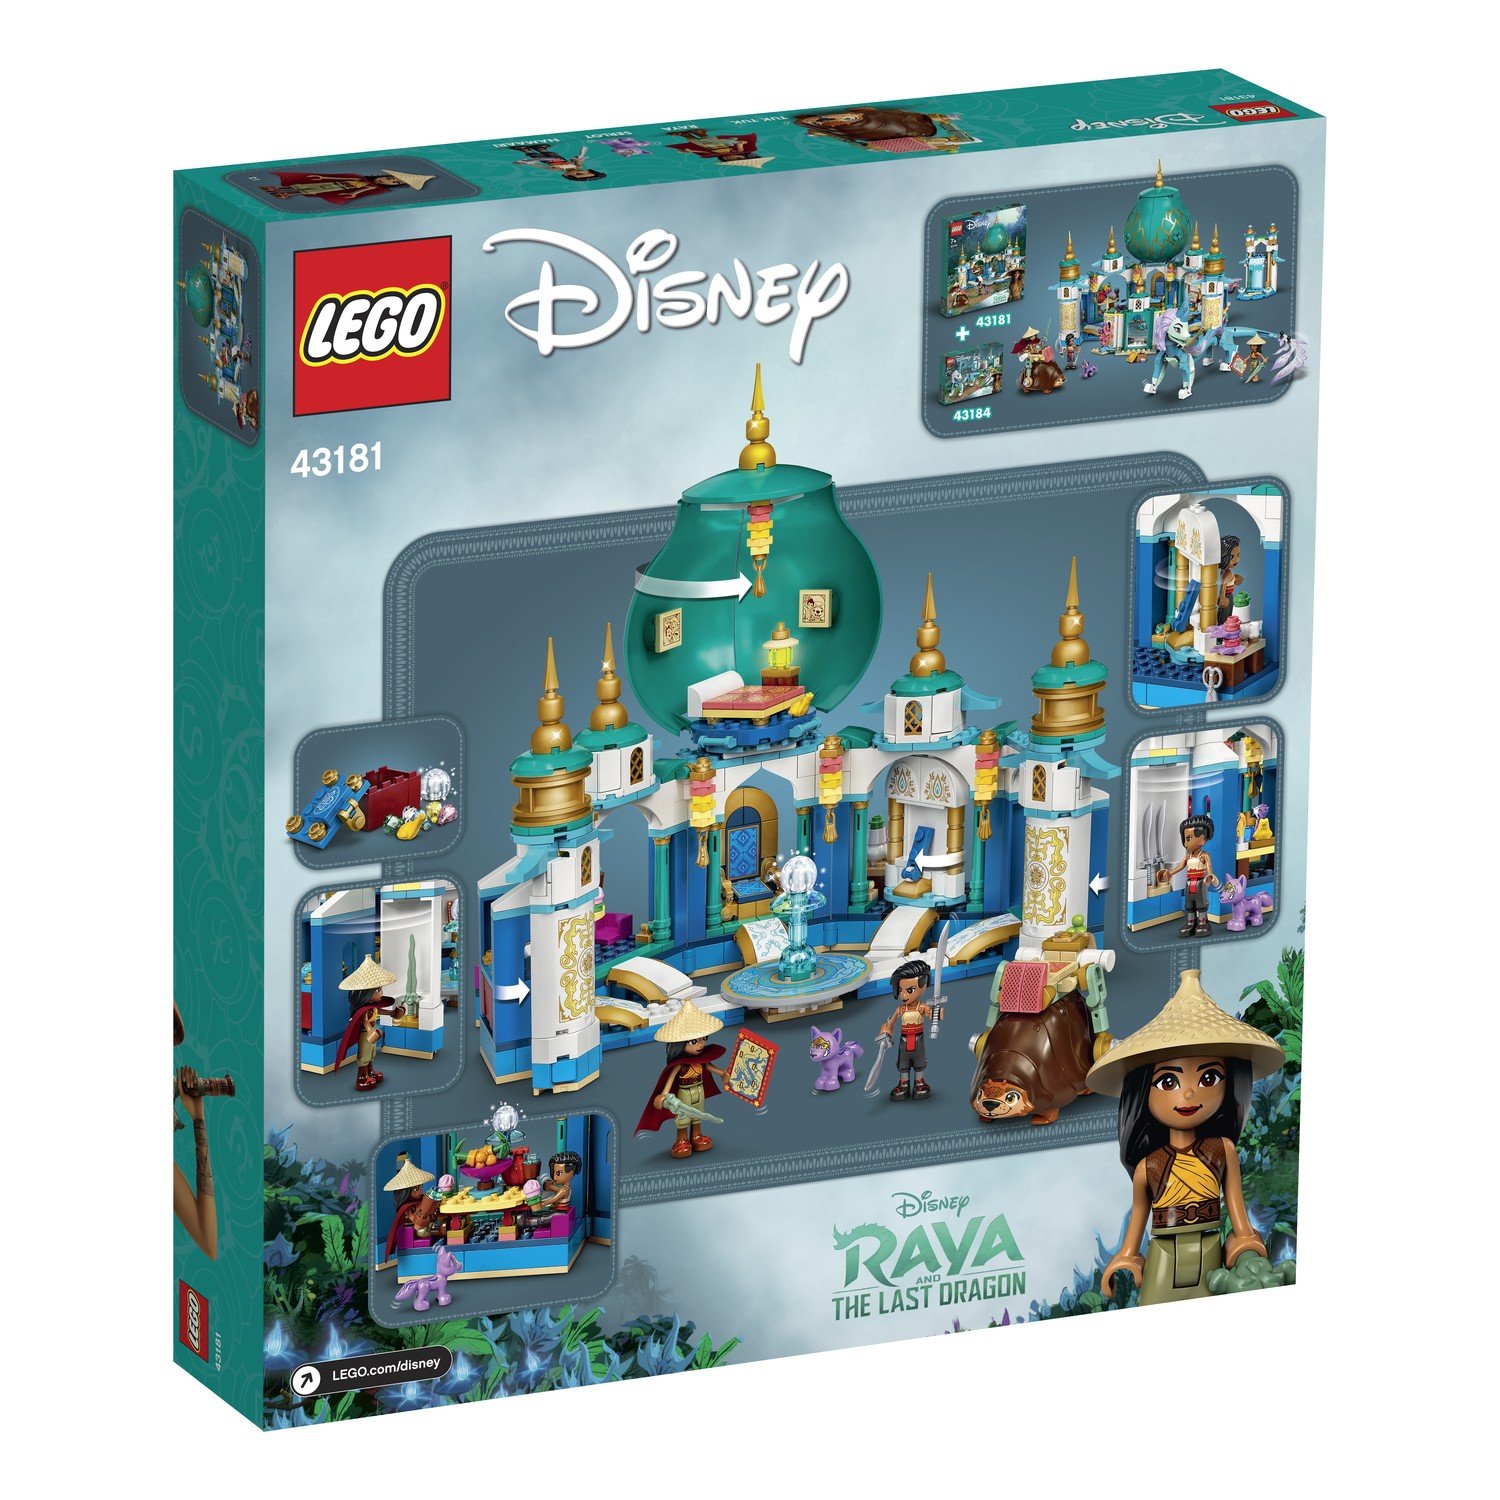 Lego Disney Princess 43181 Райя и Дворец сердца